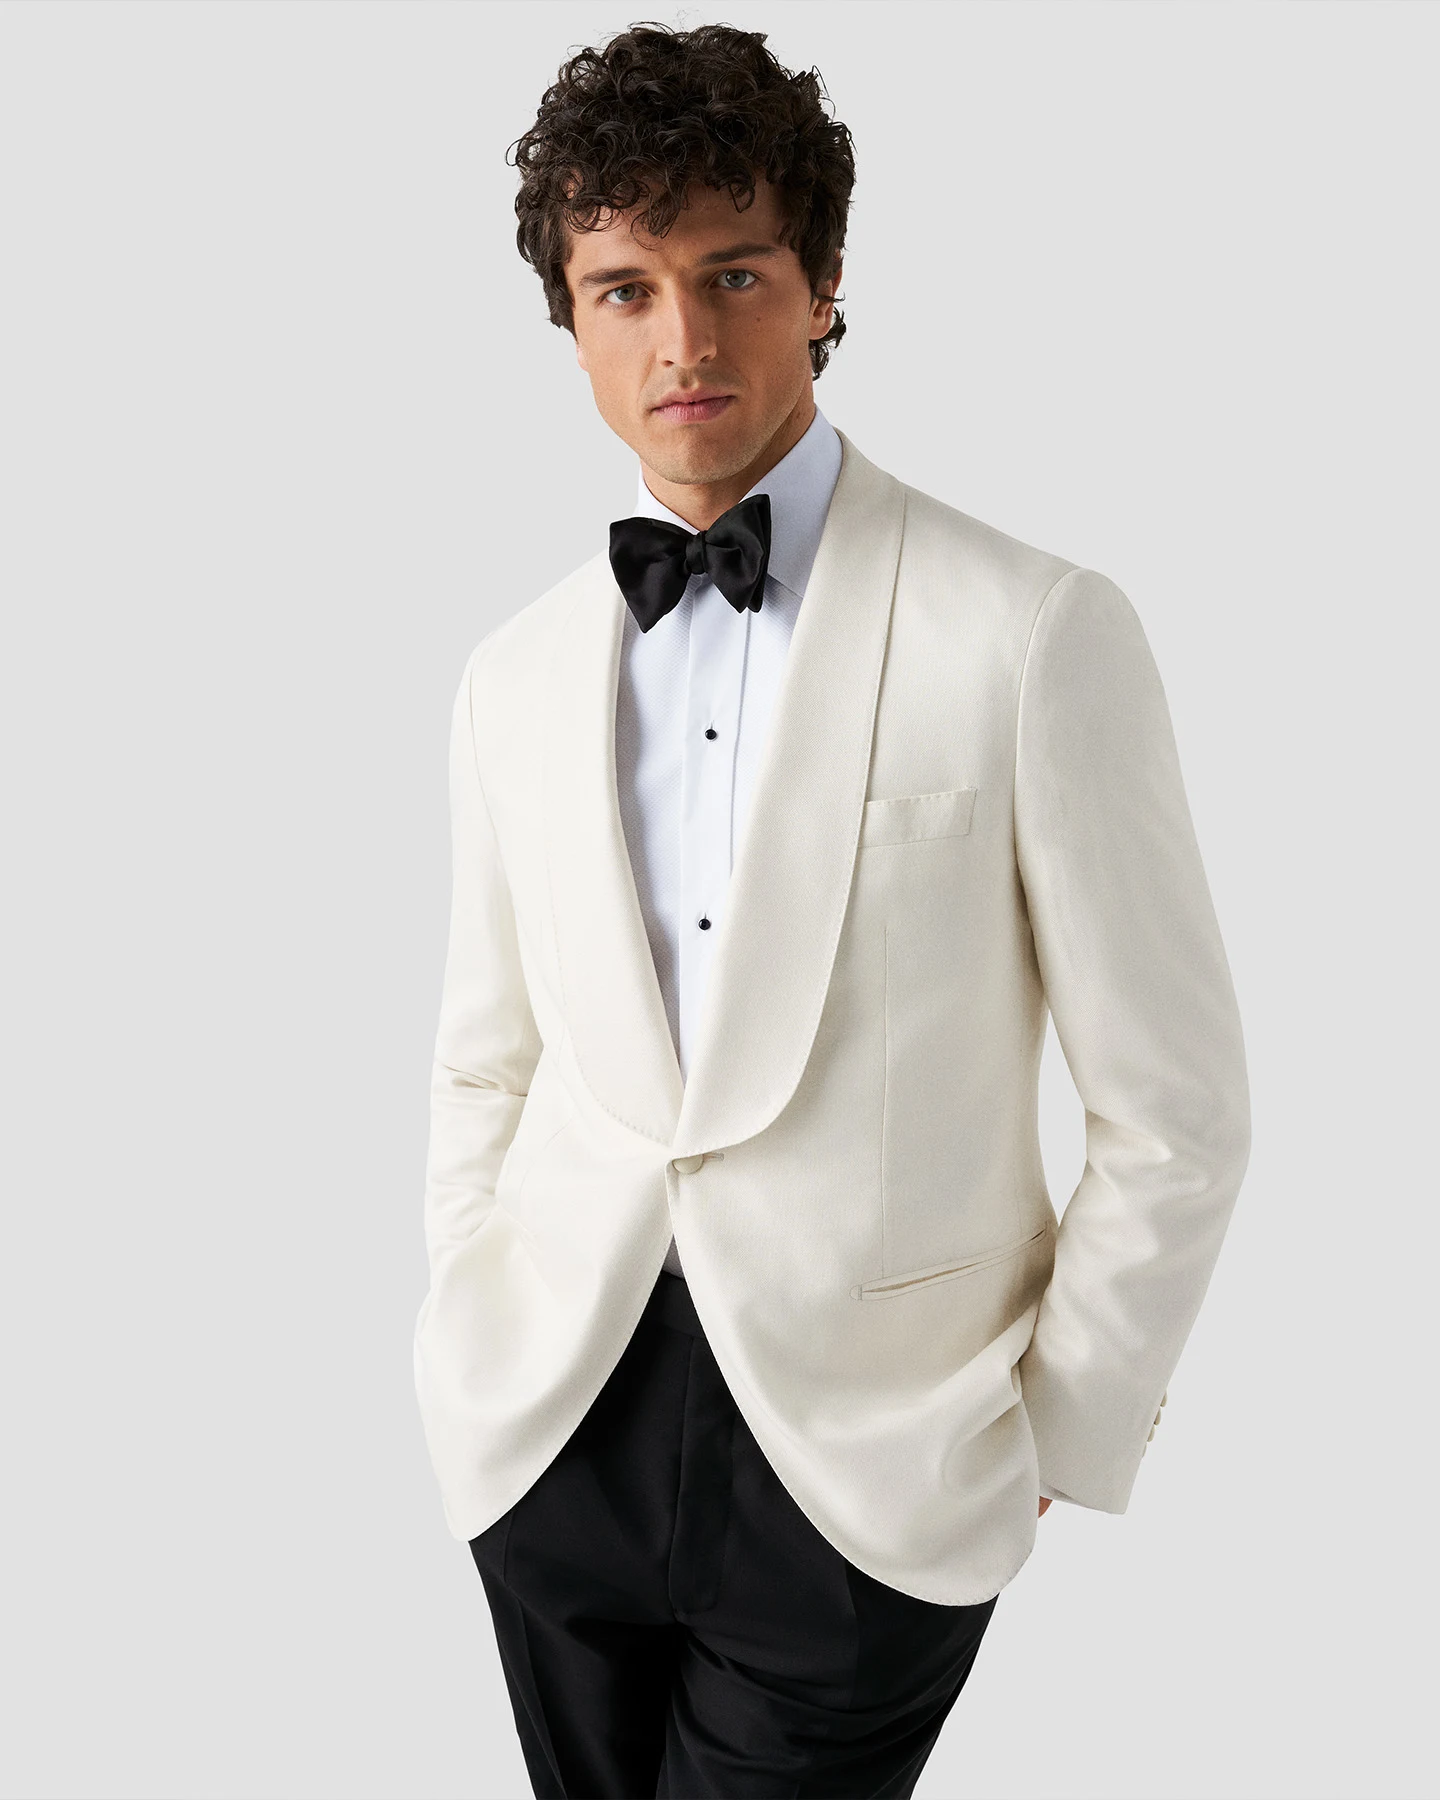 model in white tuxedo and shirt